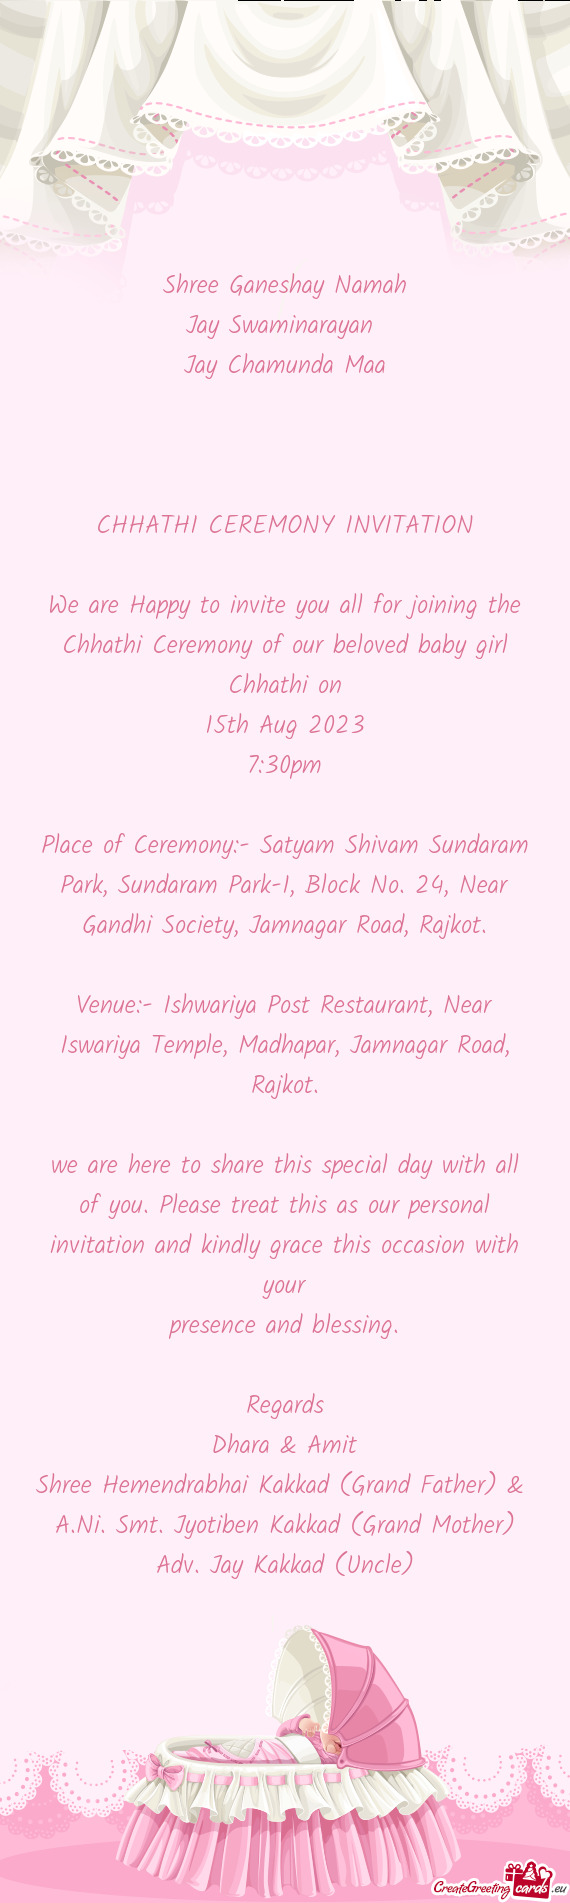 Place of Ceremony:- Satyam Shivam Sundaram Park, Sundaram Park-1, Block No. 24, Near Gandhi Society